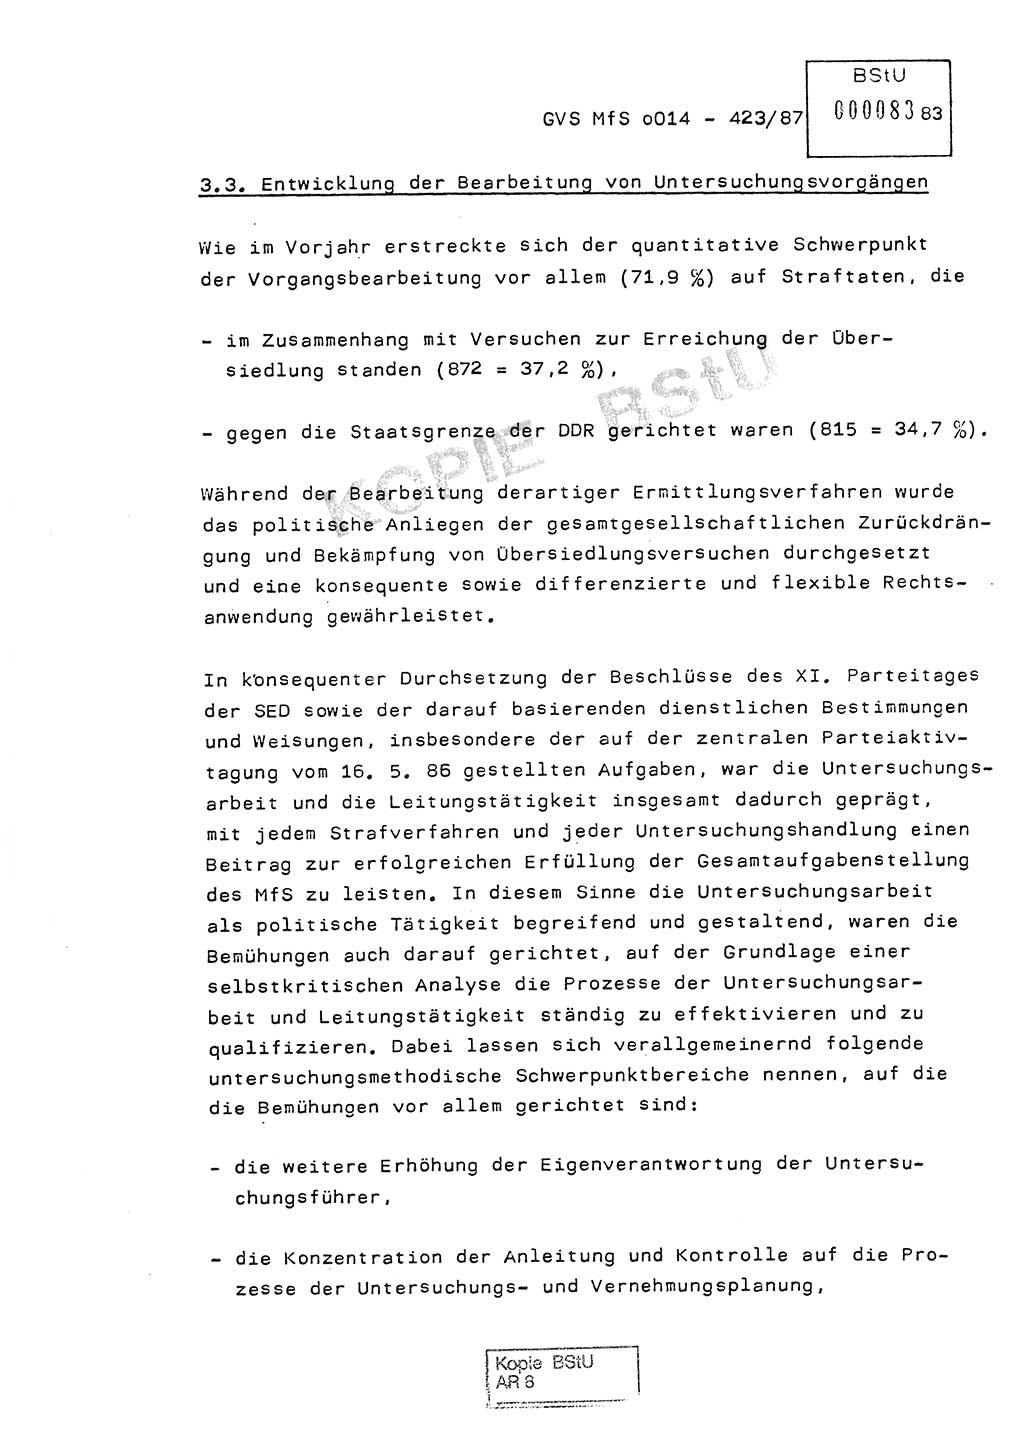 Jahresbericht der Hauptabteilung (HA) Ⅸ 1986, Einschätzung der Wirksamkeit der Untersuchungsarbeit im Jahre 1986, Ministerium für Staatssicherheit (MfS) der Deutschen Demokratischen Republik (DDR), Hauptabteilung Ⅸ, Geheime Verschlußsache (GVS) o014-423/87, Berlin 1987, Seite 83 (Einsch. MfS DDR HA Ⅸ GVS o014-423/87 1986, S. 83)